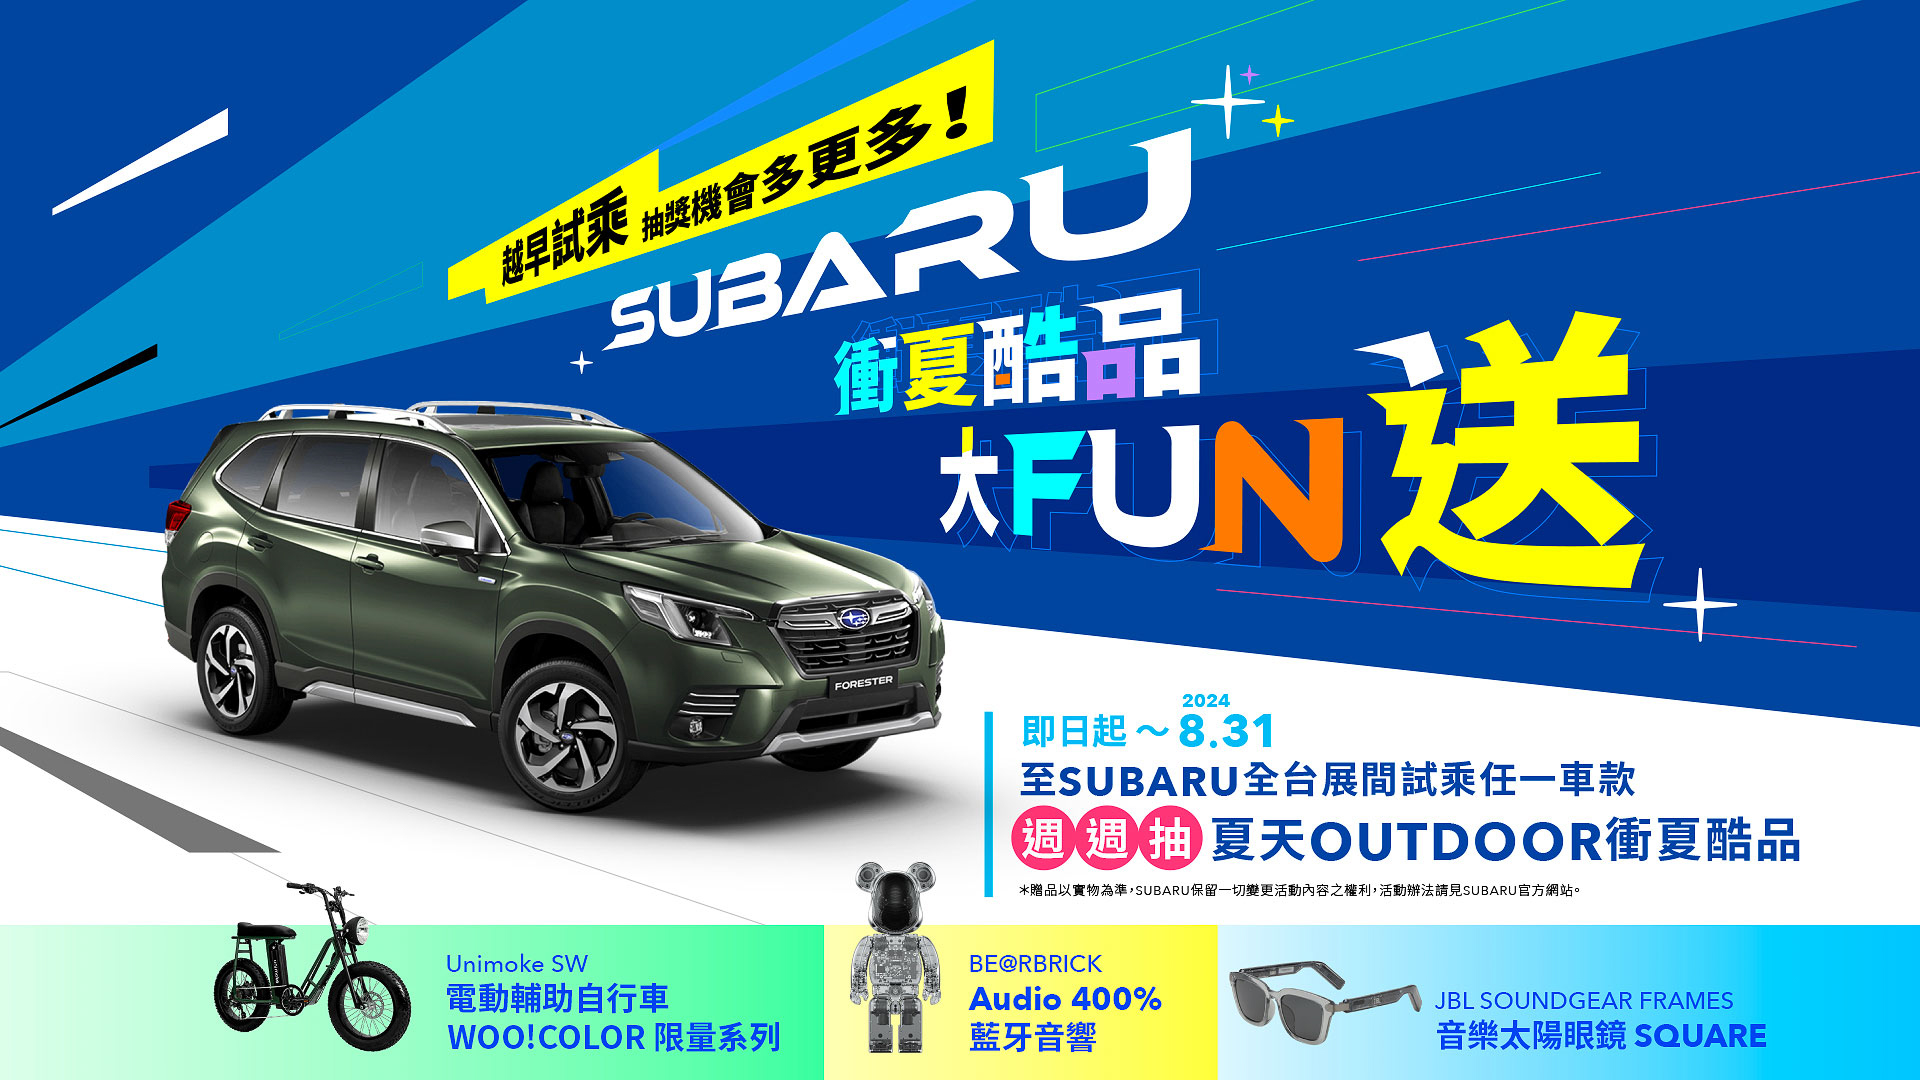 Subaru 衝夏酷品大 fun 送 來店試乘抽 Outdoor 衝夏酷品